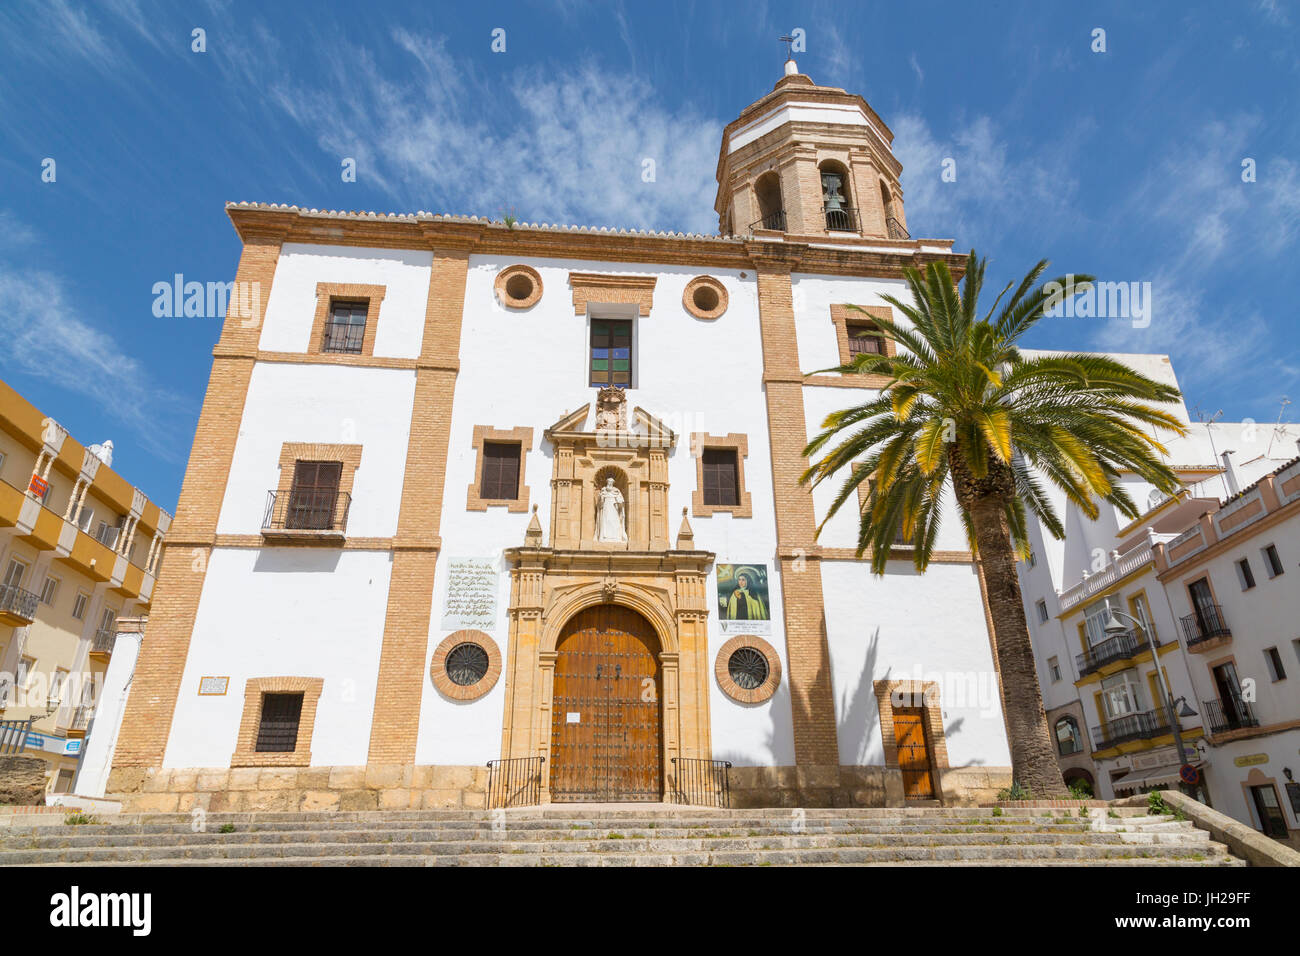 View of Iglesia de Nuestra Senora de la Merced Ronda, Ronda, Andalusia, Spain, Europe Stock Photo